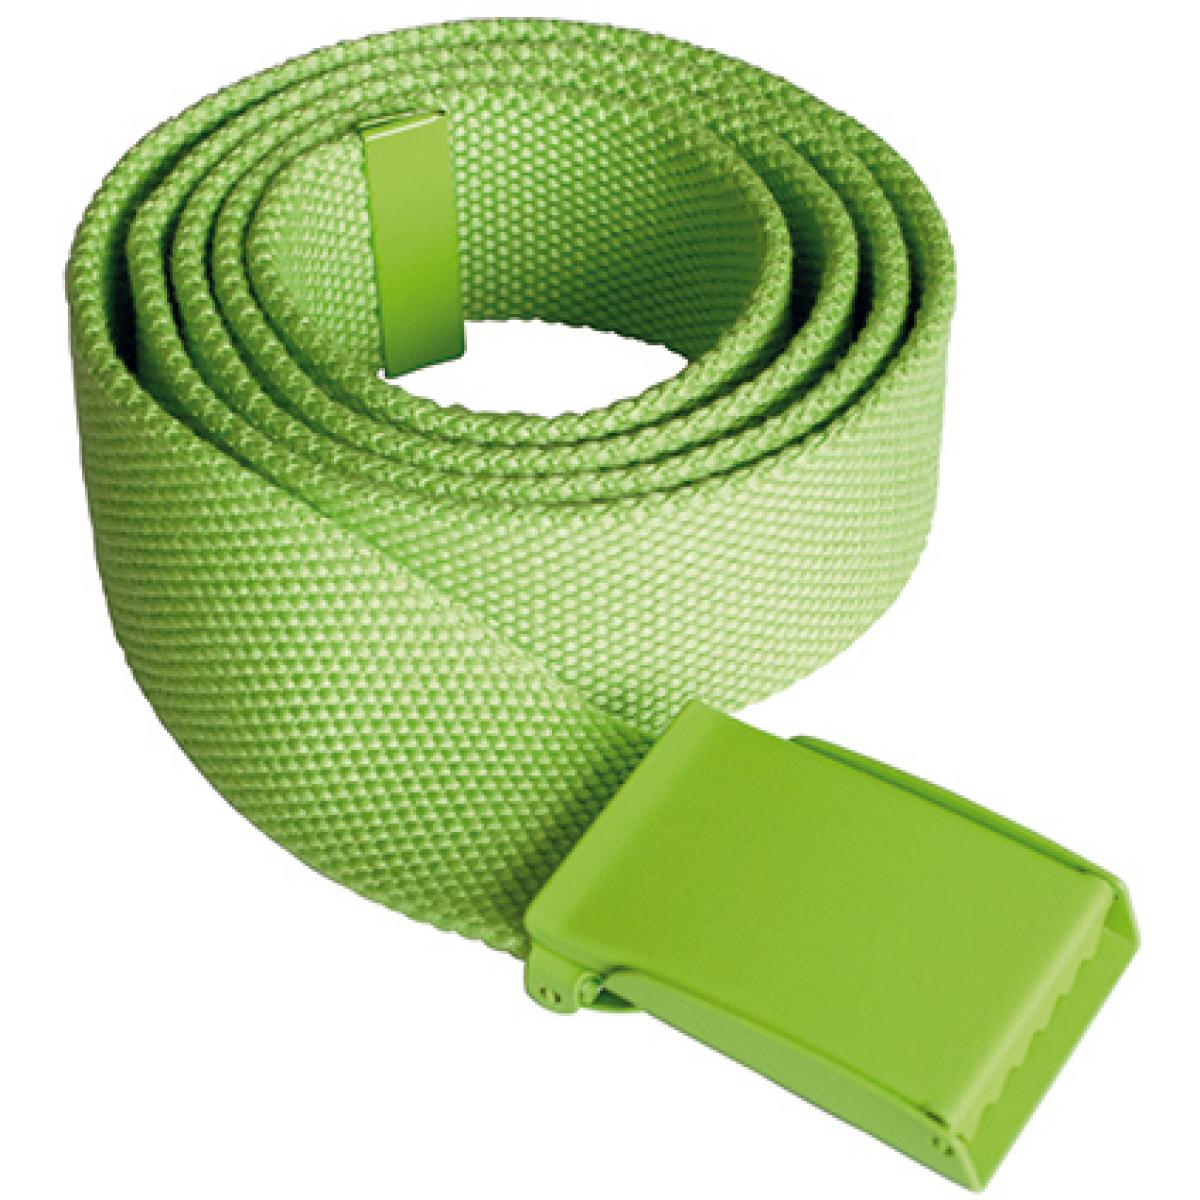 Hersteller: Korntex Herstellernummer: KXPYB Artikelbezeichnung: Polyestergürtel, Breite: 4 cm, Länge inkl. Schnalle: 130 cm Farbe: Lime Green